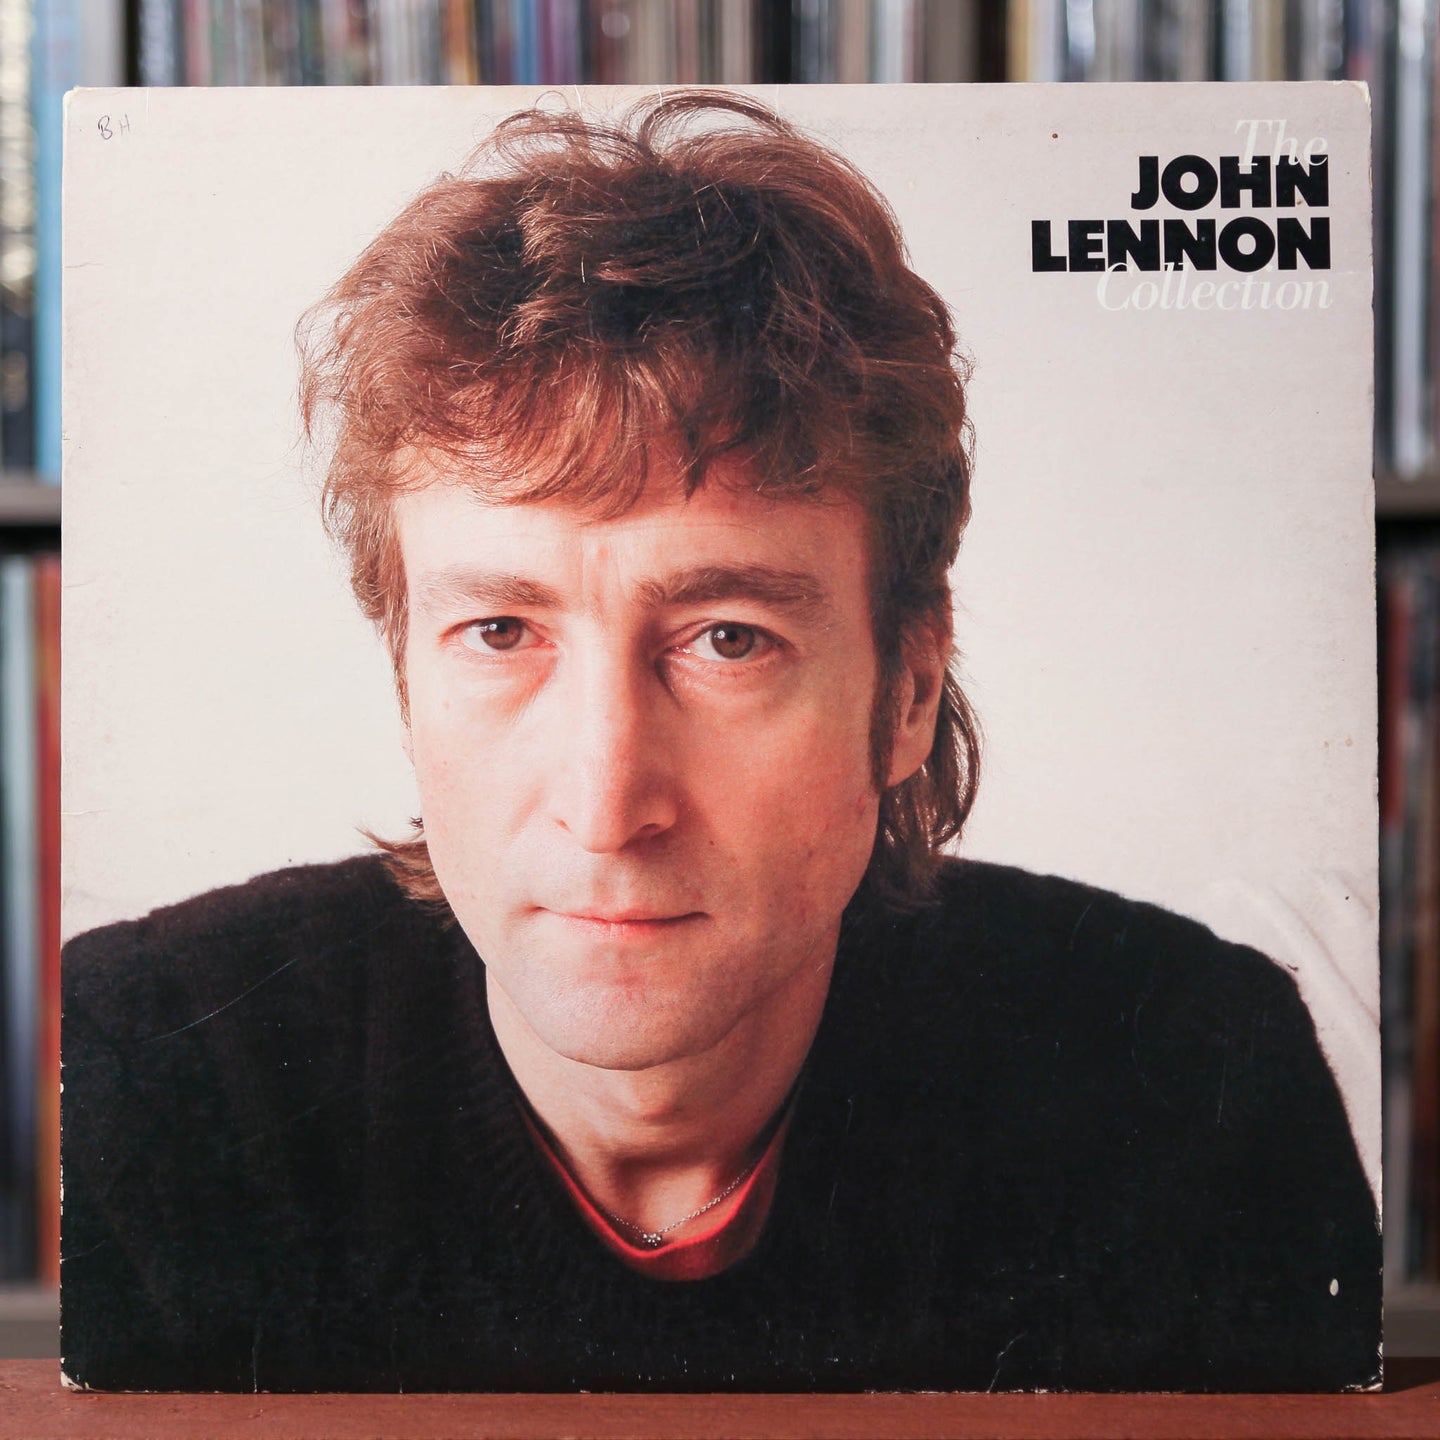 John Lennon - The John Lennon Collection - 1980 Geffen, VG/VG